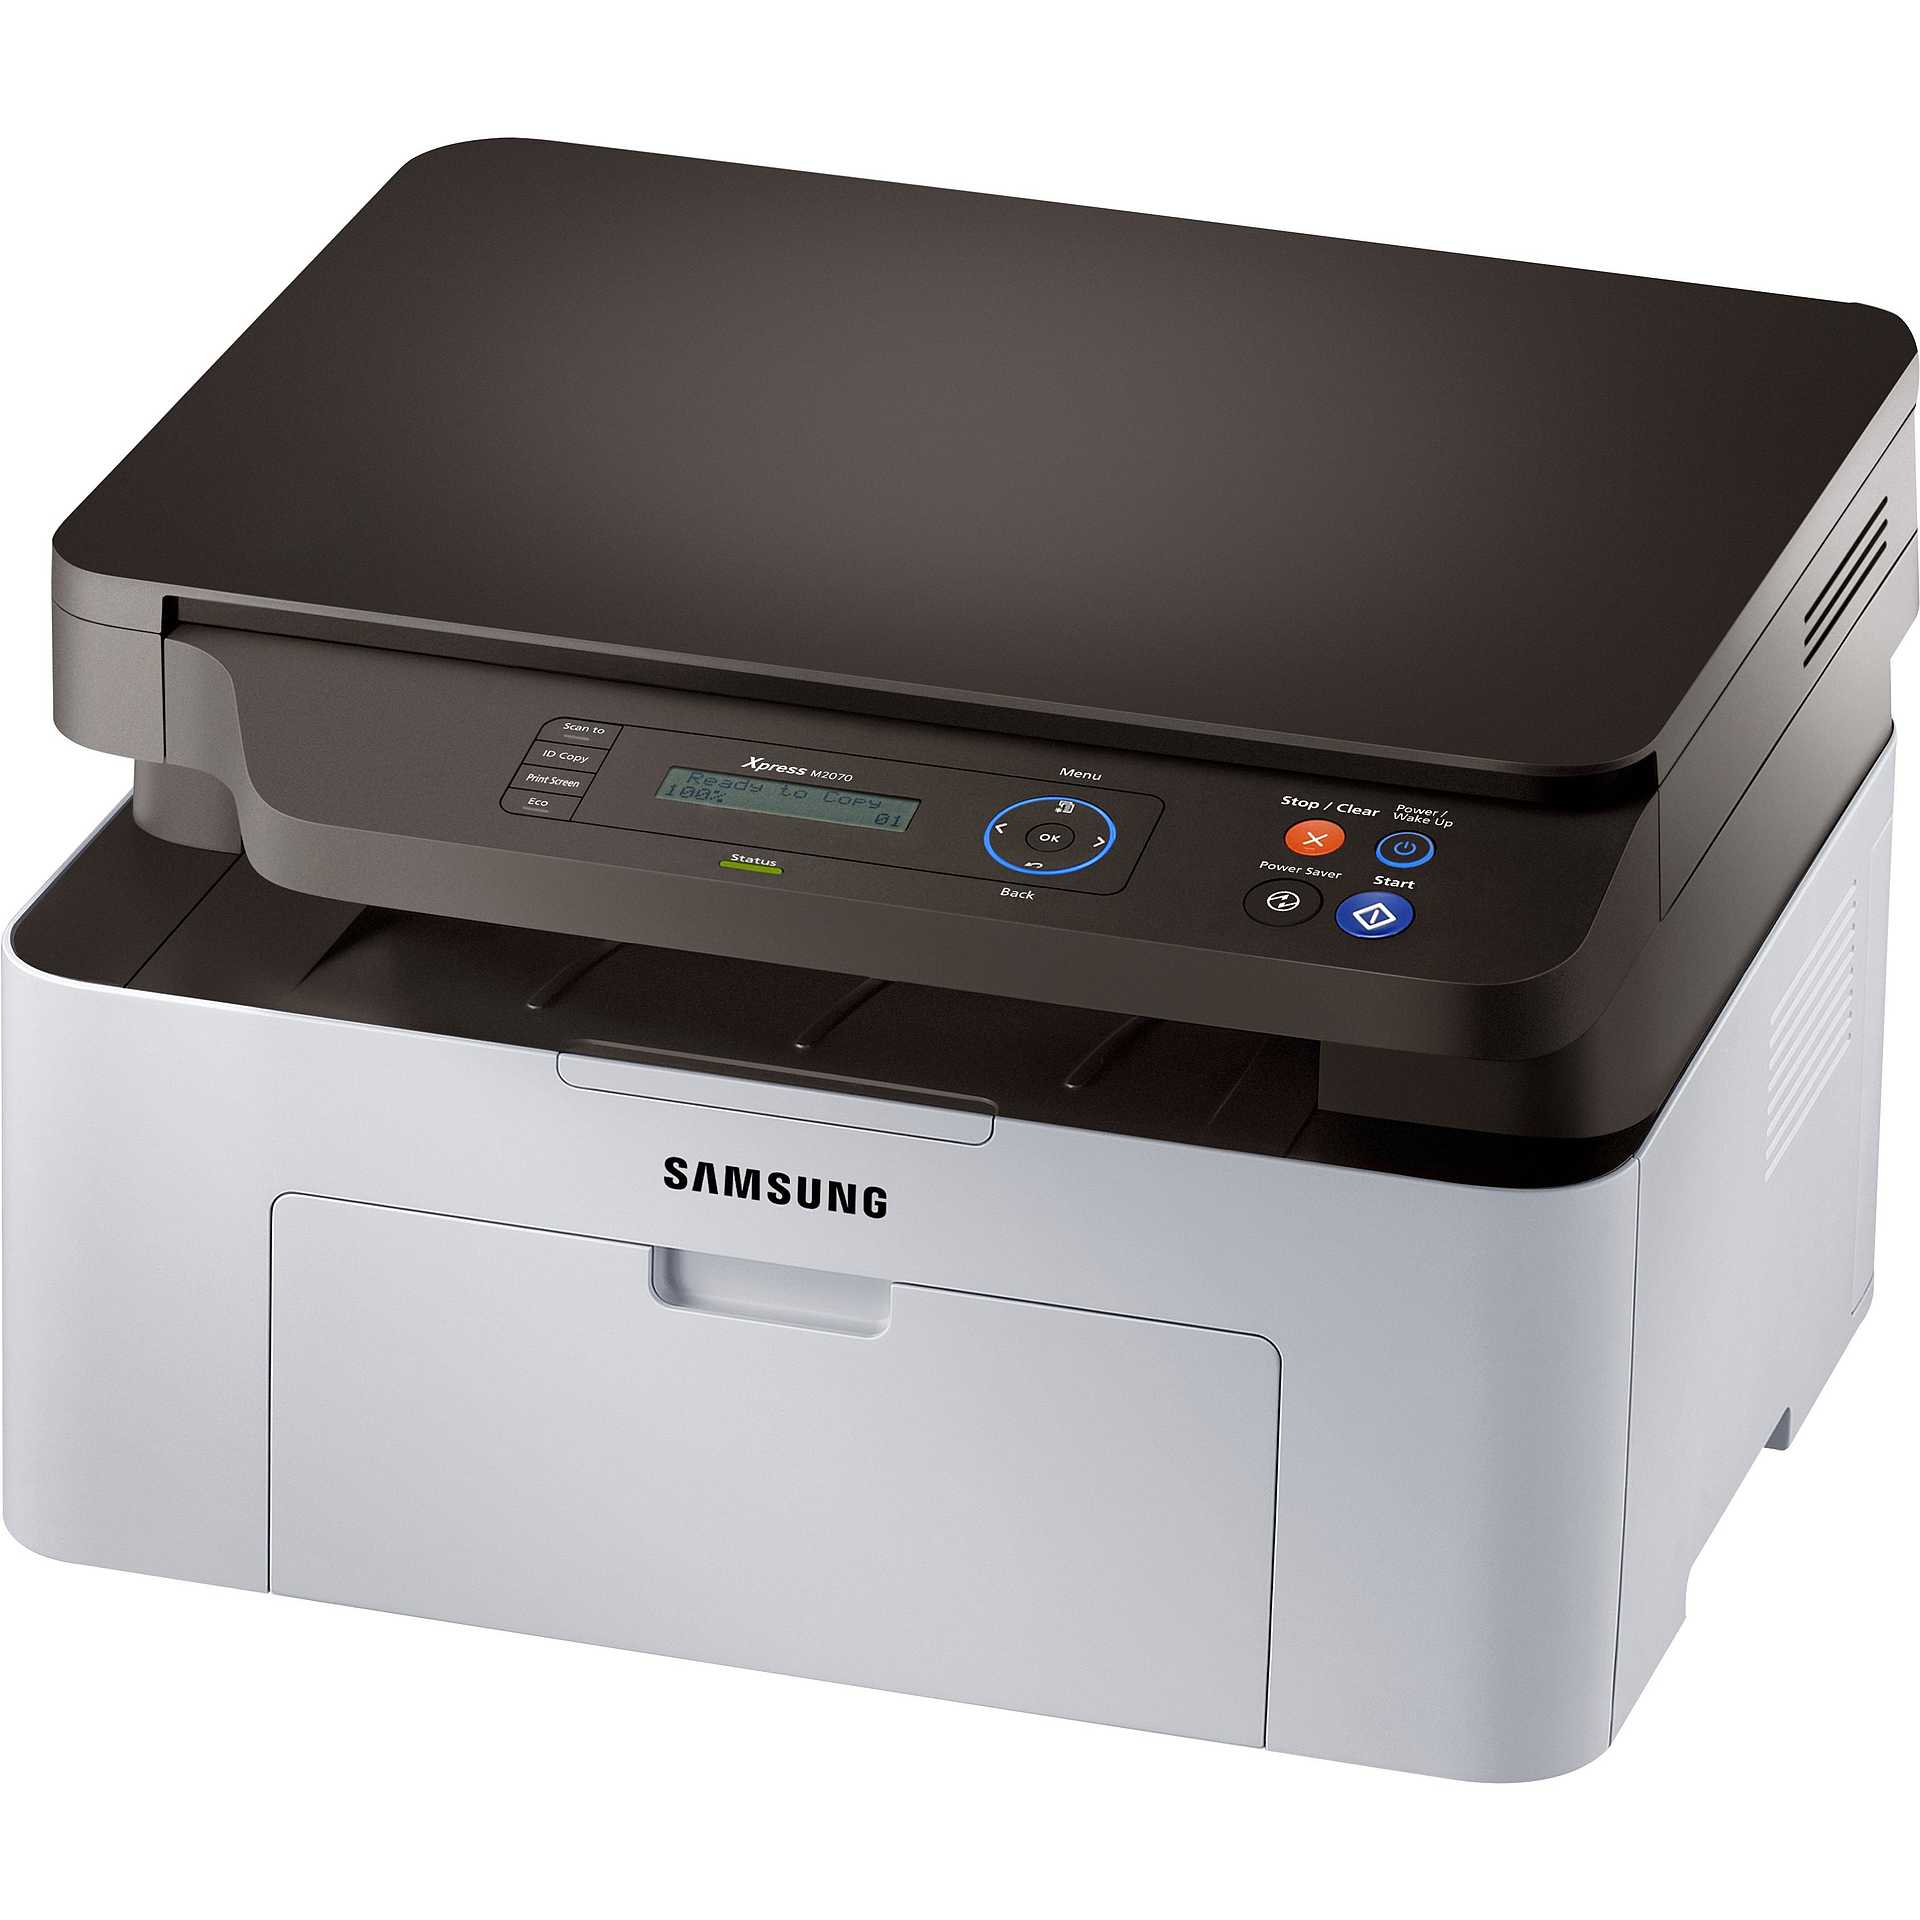 Samsung Xpress SL-M2070 stampante multifunzione laser 3in1 colore nero e  bianco - Stampanti e scanner multifunzioni Laser - ClickForShop